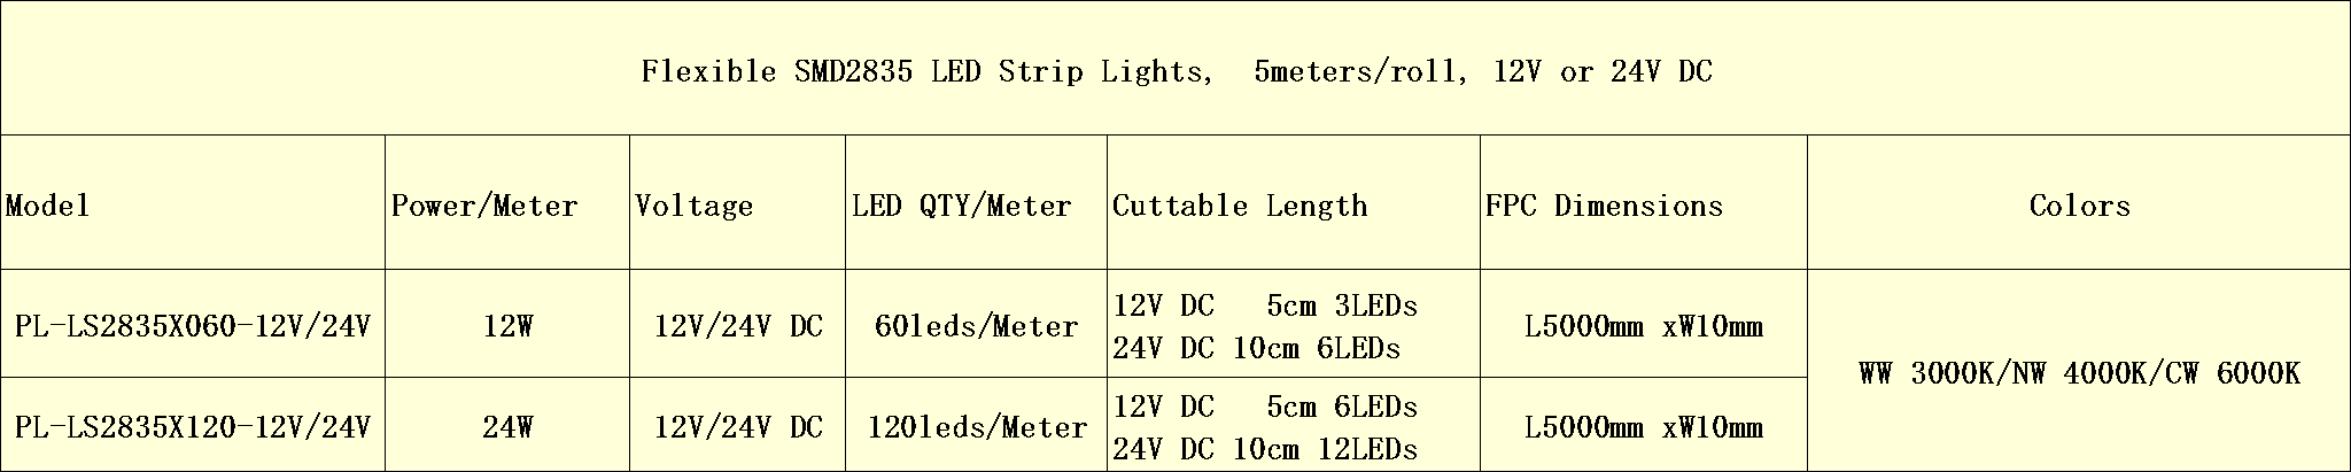 flexible smd2835 led strip lights